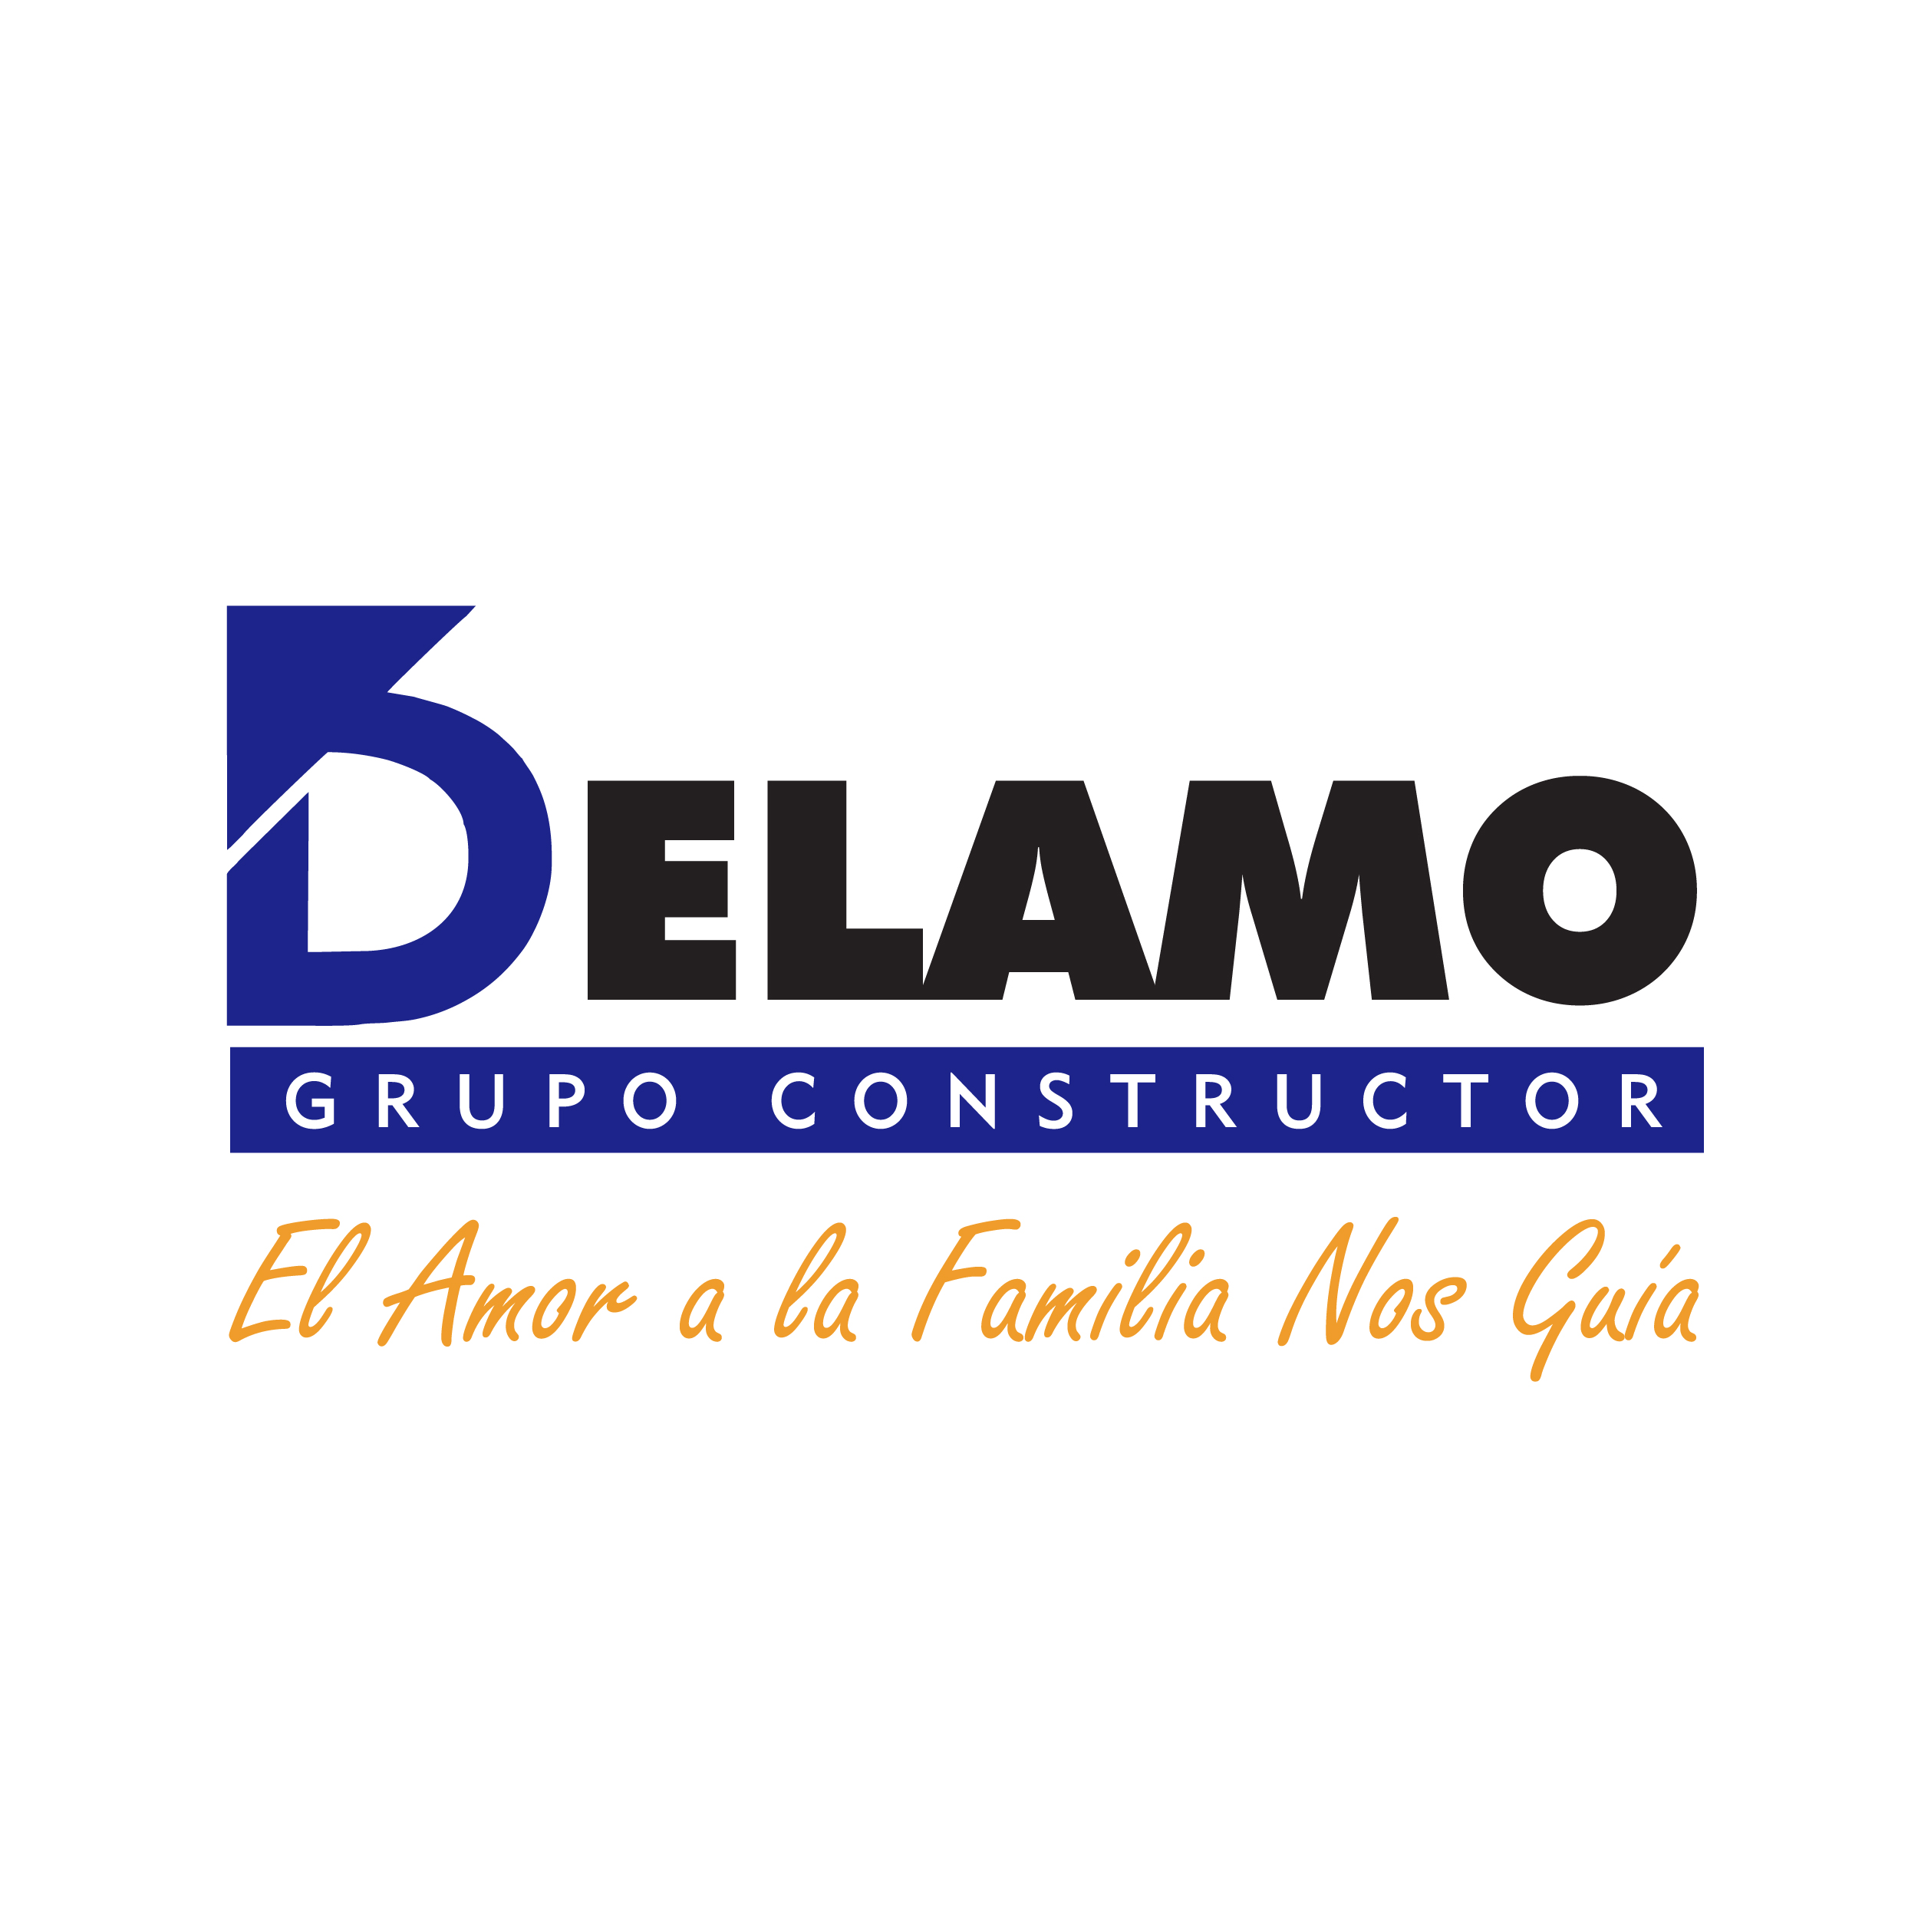 DELAMO GRUPO CONSTRUCTOR S.A. DE C.V.